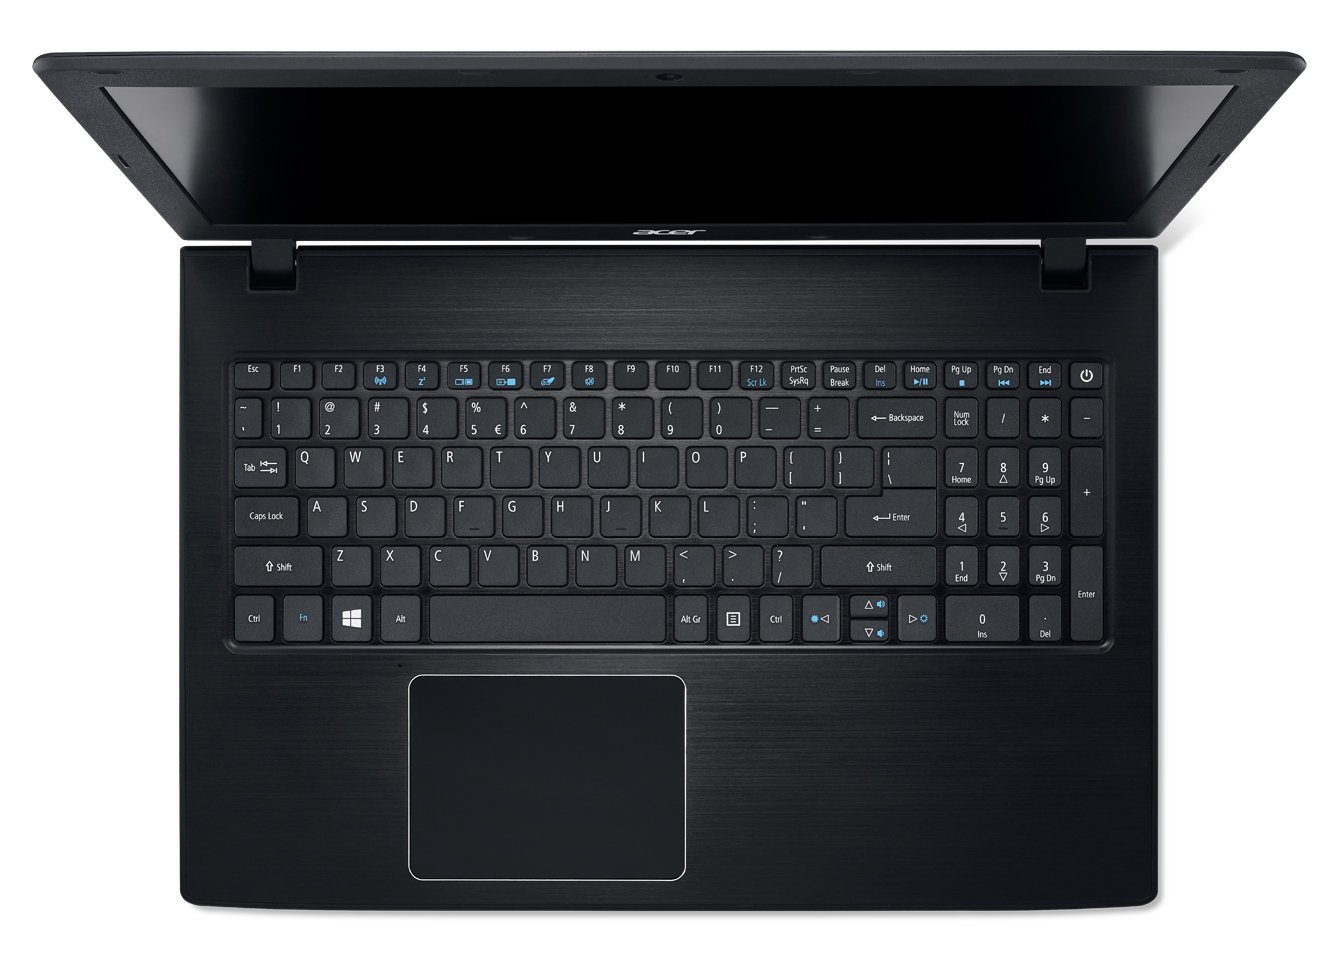 Acer Aspire E 15 (E5-576) - Specs, Tests, and Prices | LaptopMedia.com